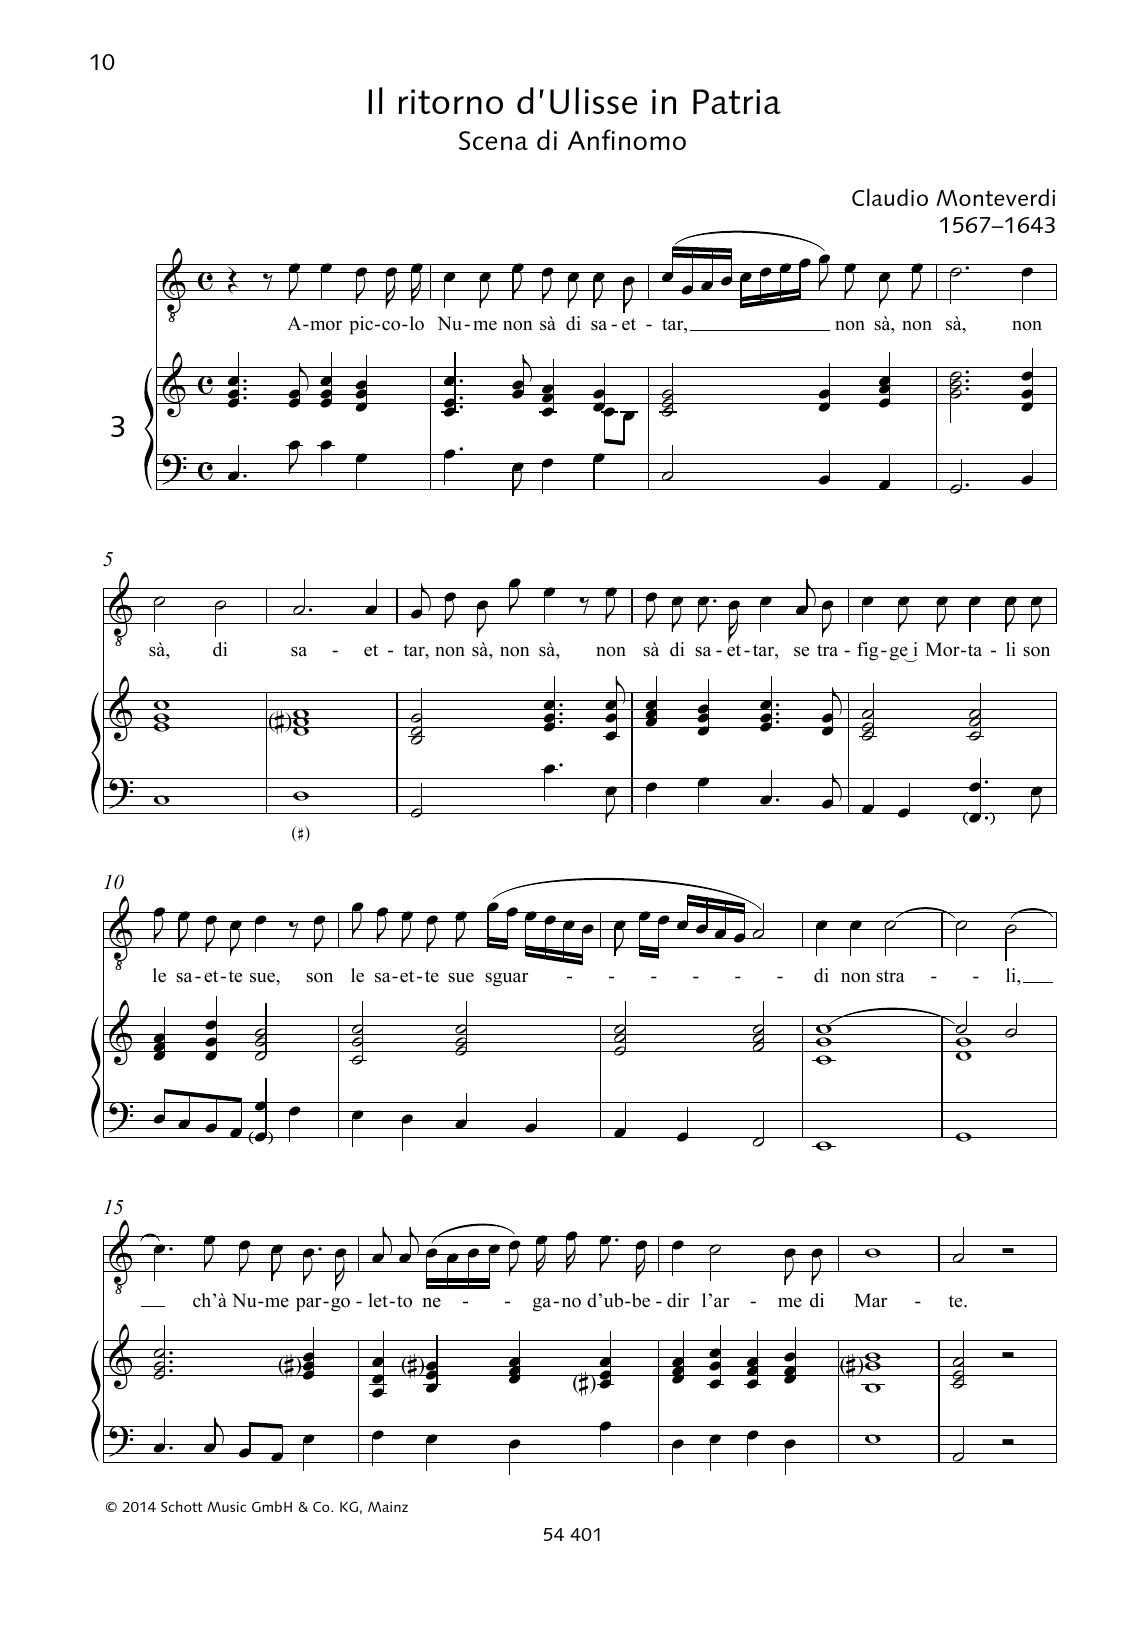 Download Claudio Monteverdi Amor piccolo Nume non sà di saettar Sheet Music